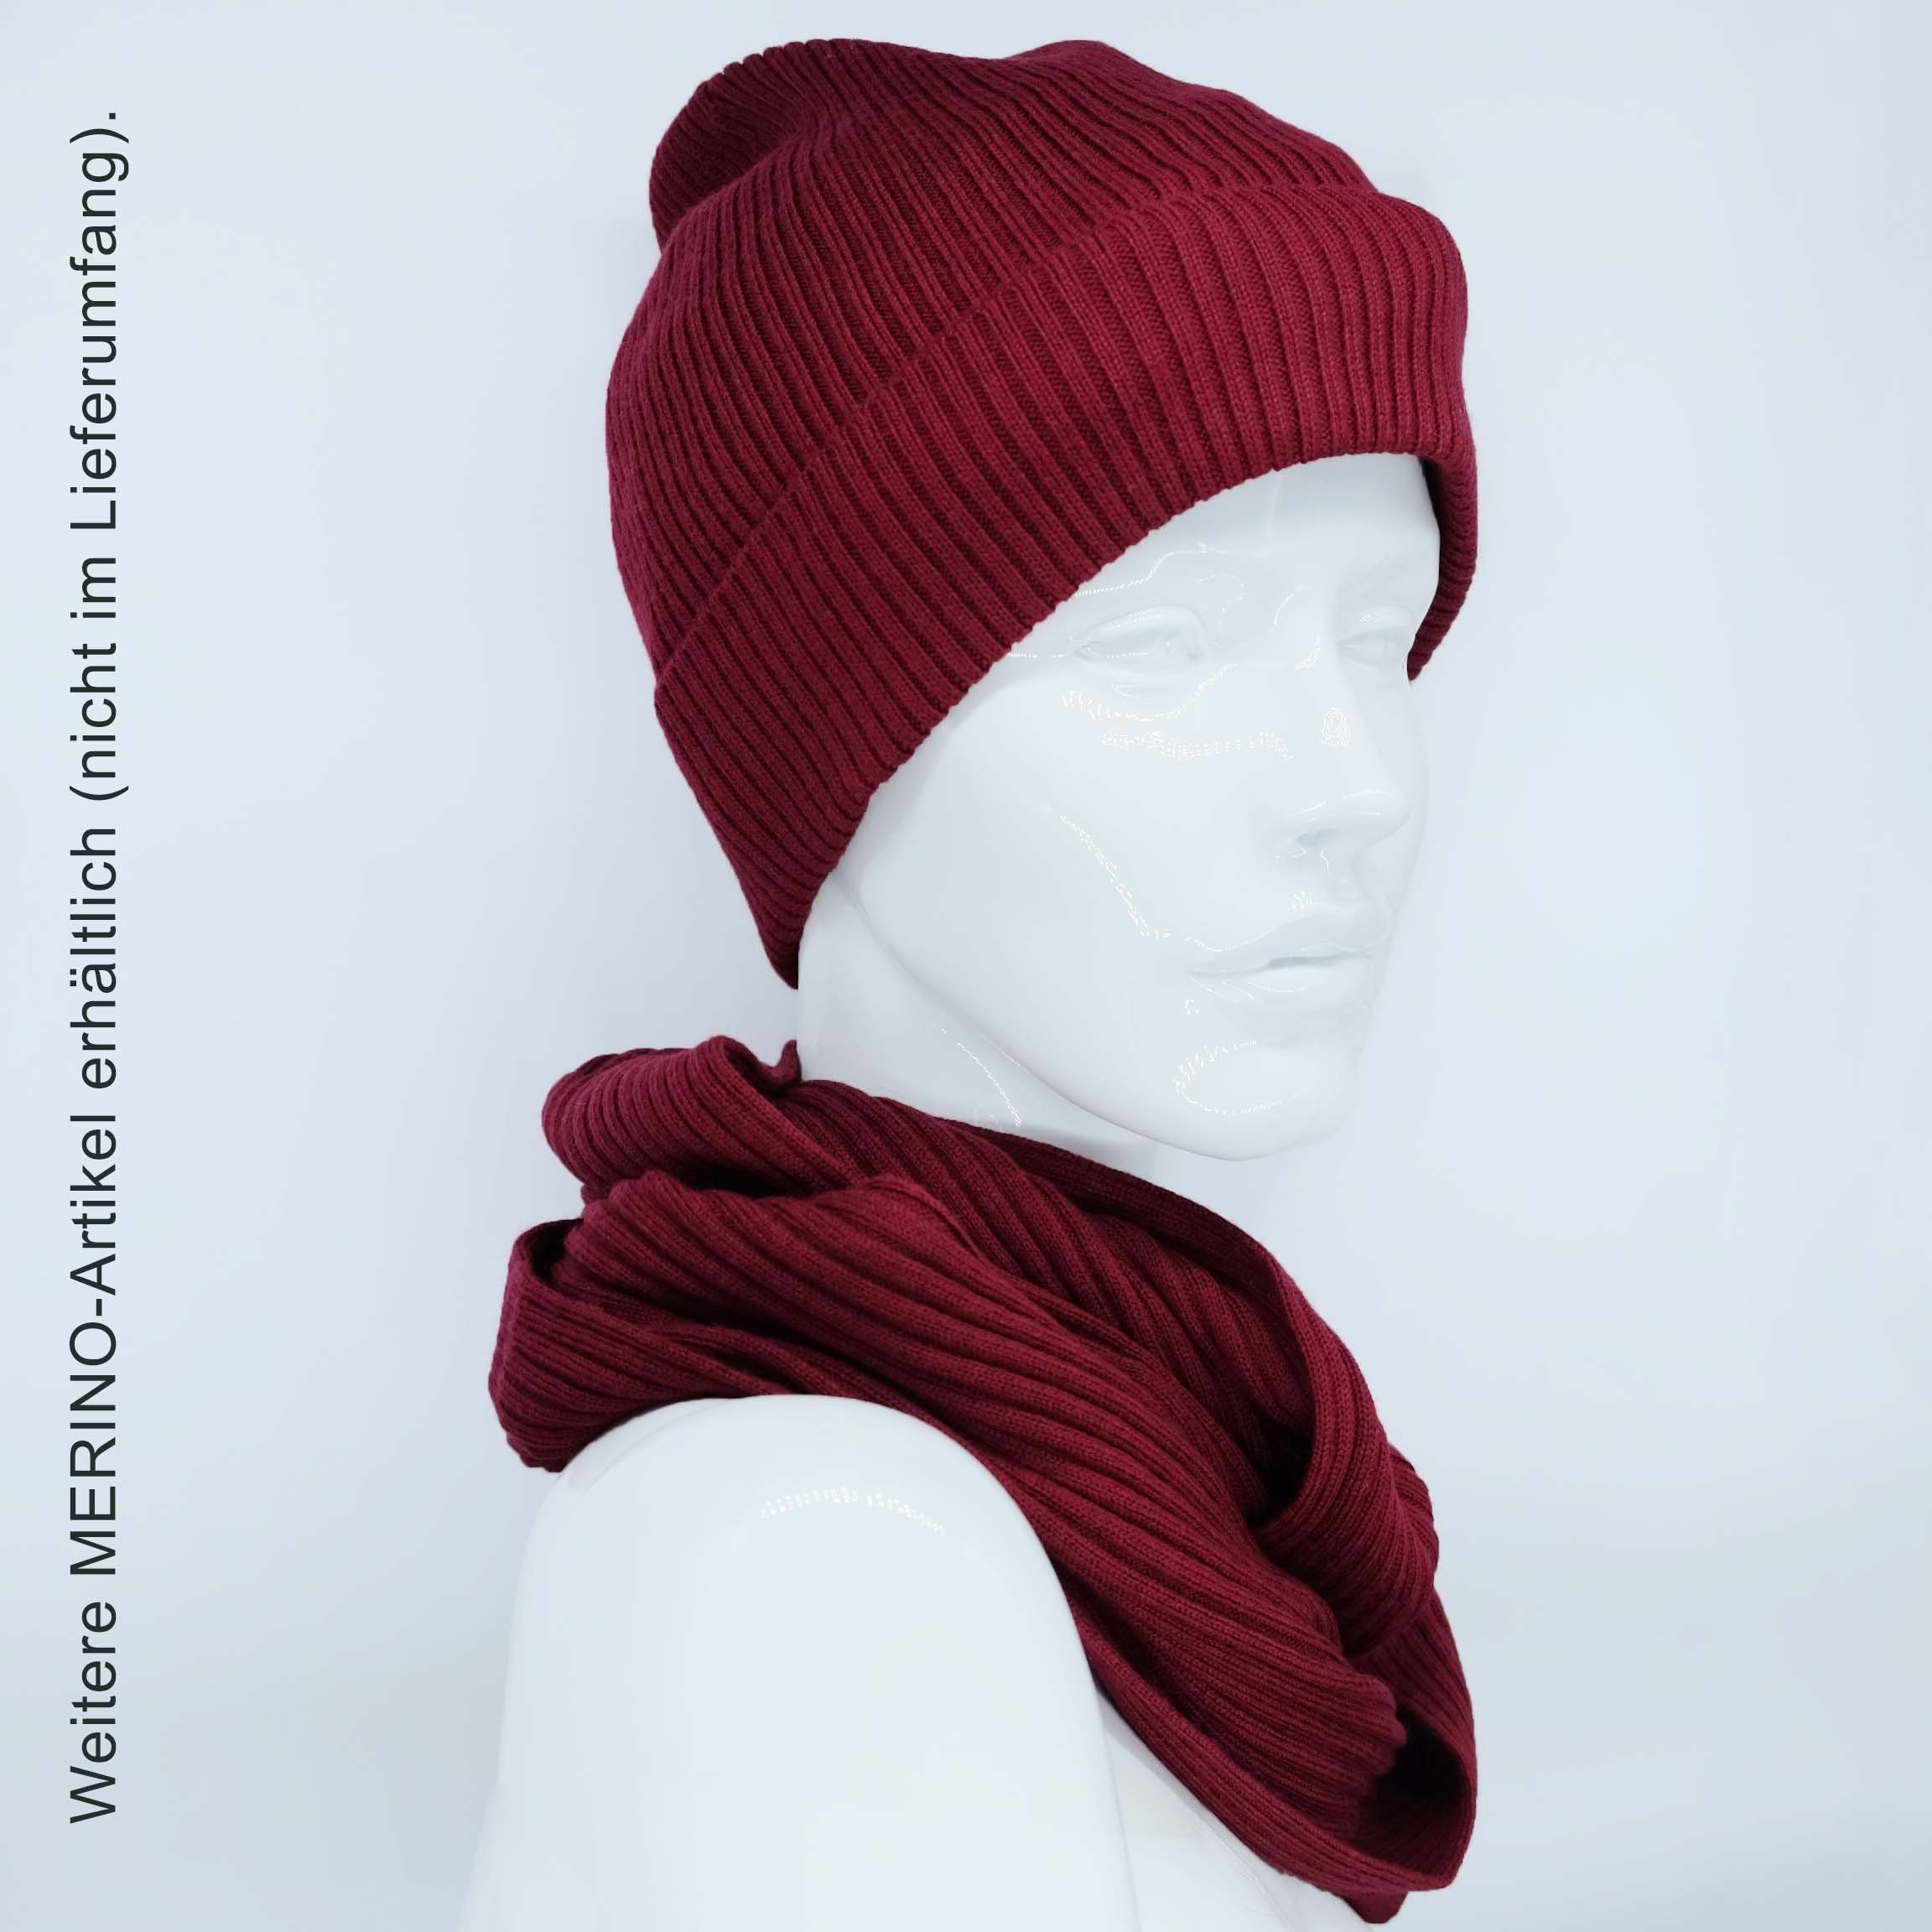 merlot Stirnband Damen Merino Stirnband Feinstrick, 100% BEAZZ WOLLE warm Ohrenwärmer Winter weich und helles rot